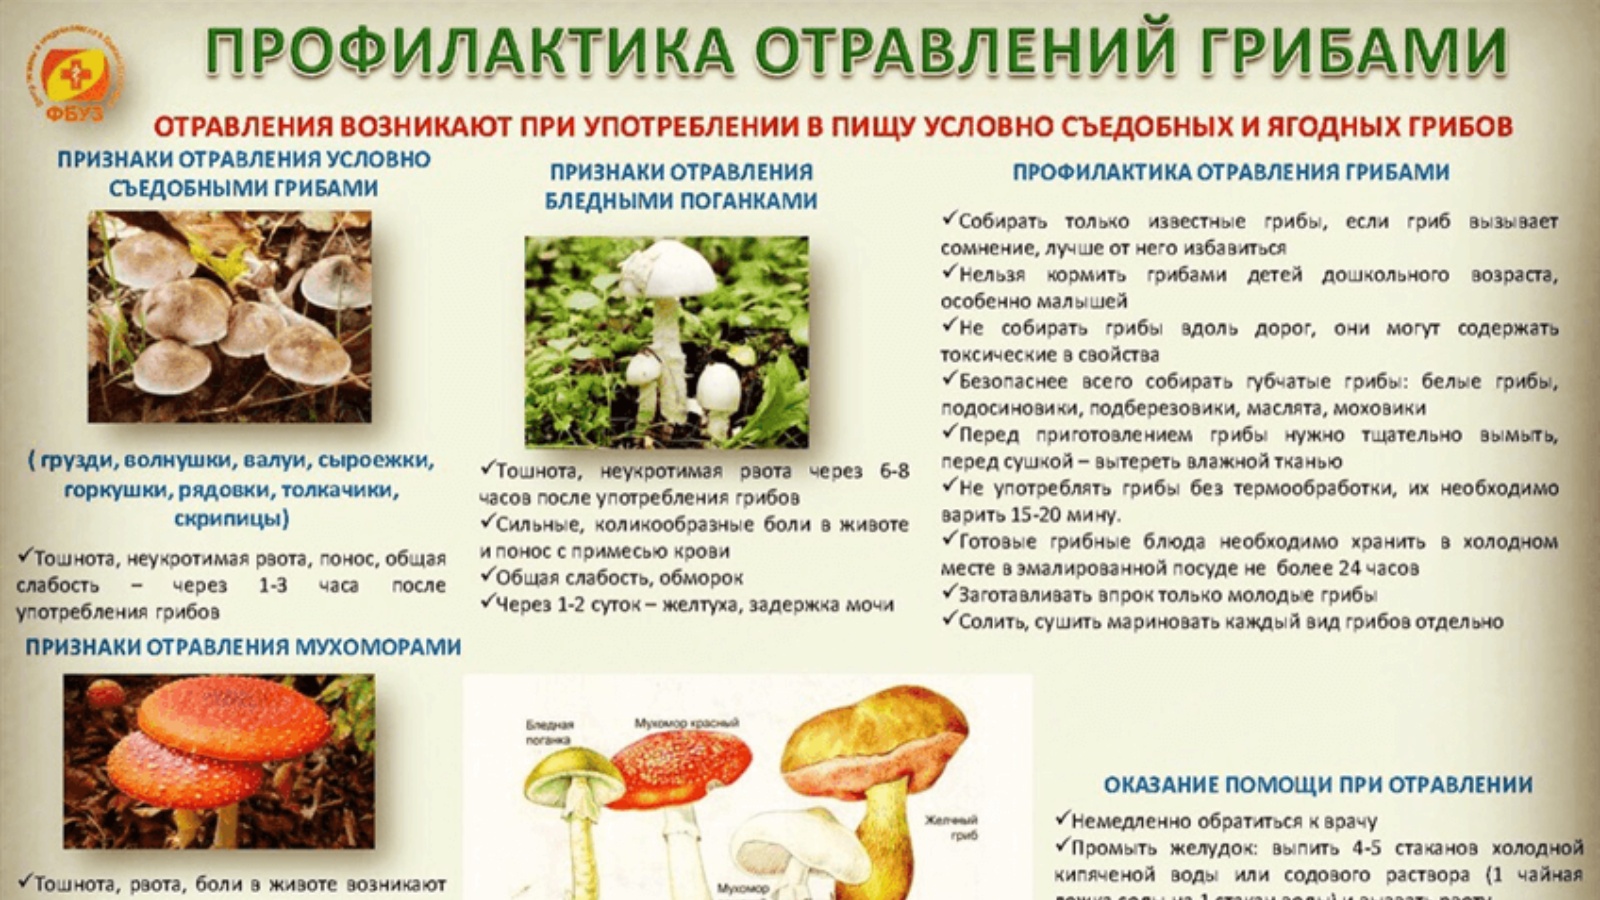 Перечислите меры профилактики отравлений грибами.